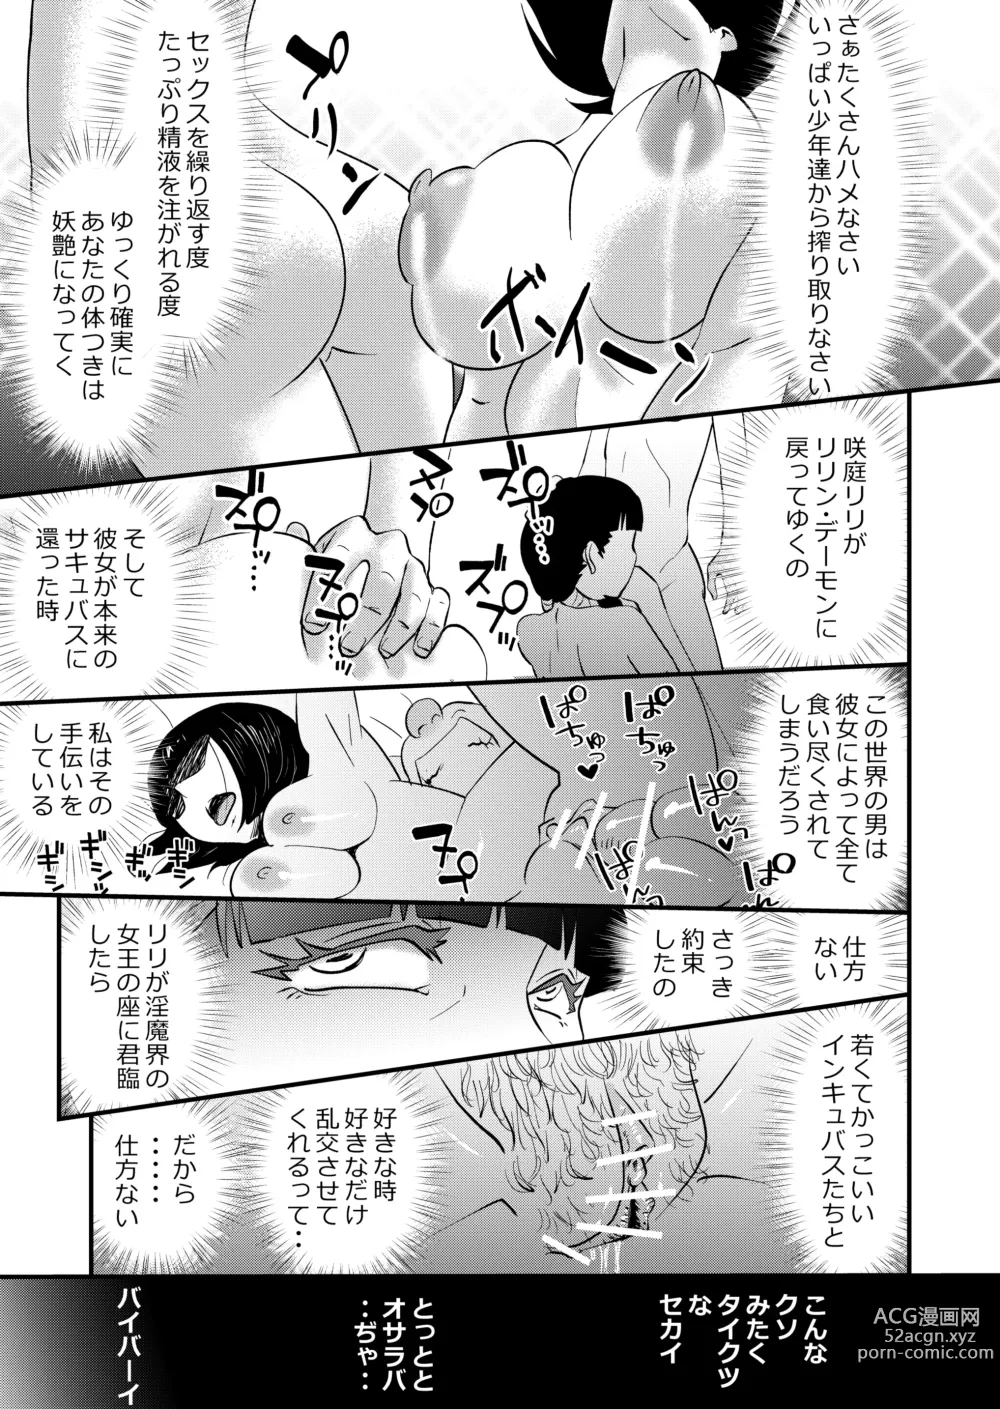 Page 31 of doujinshi Inma JK Succubus no Yabou